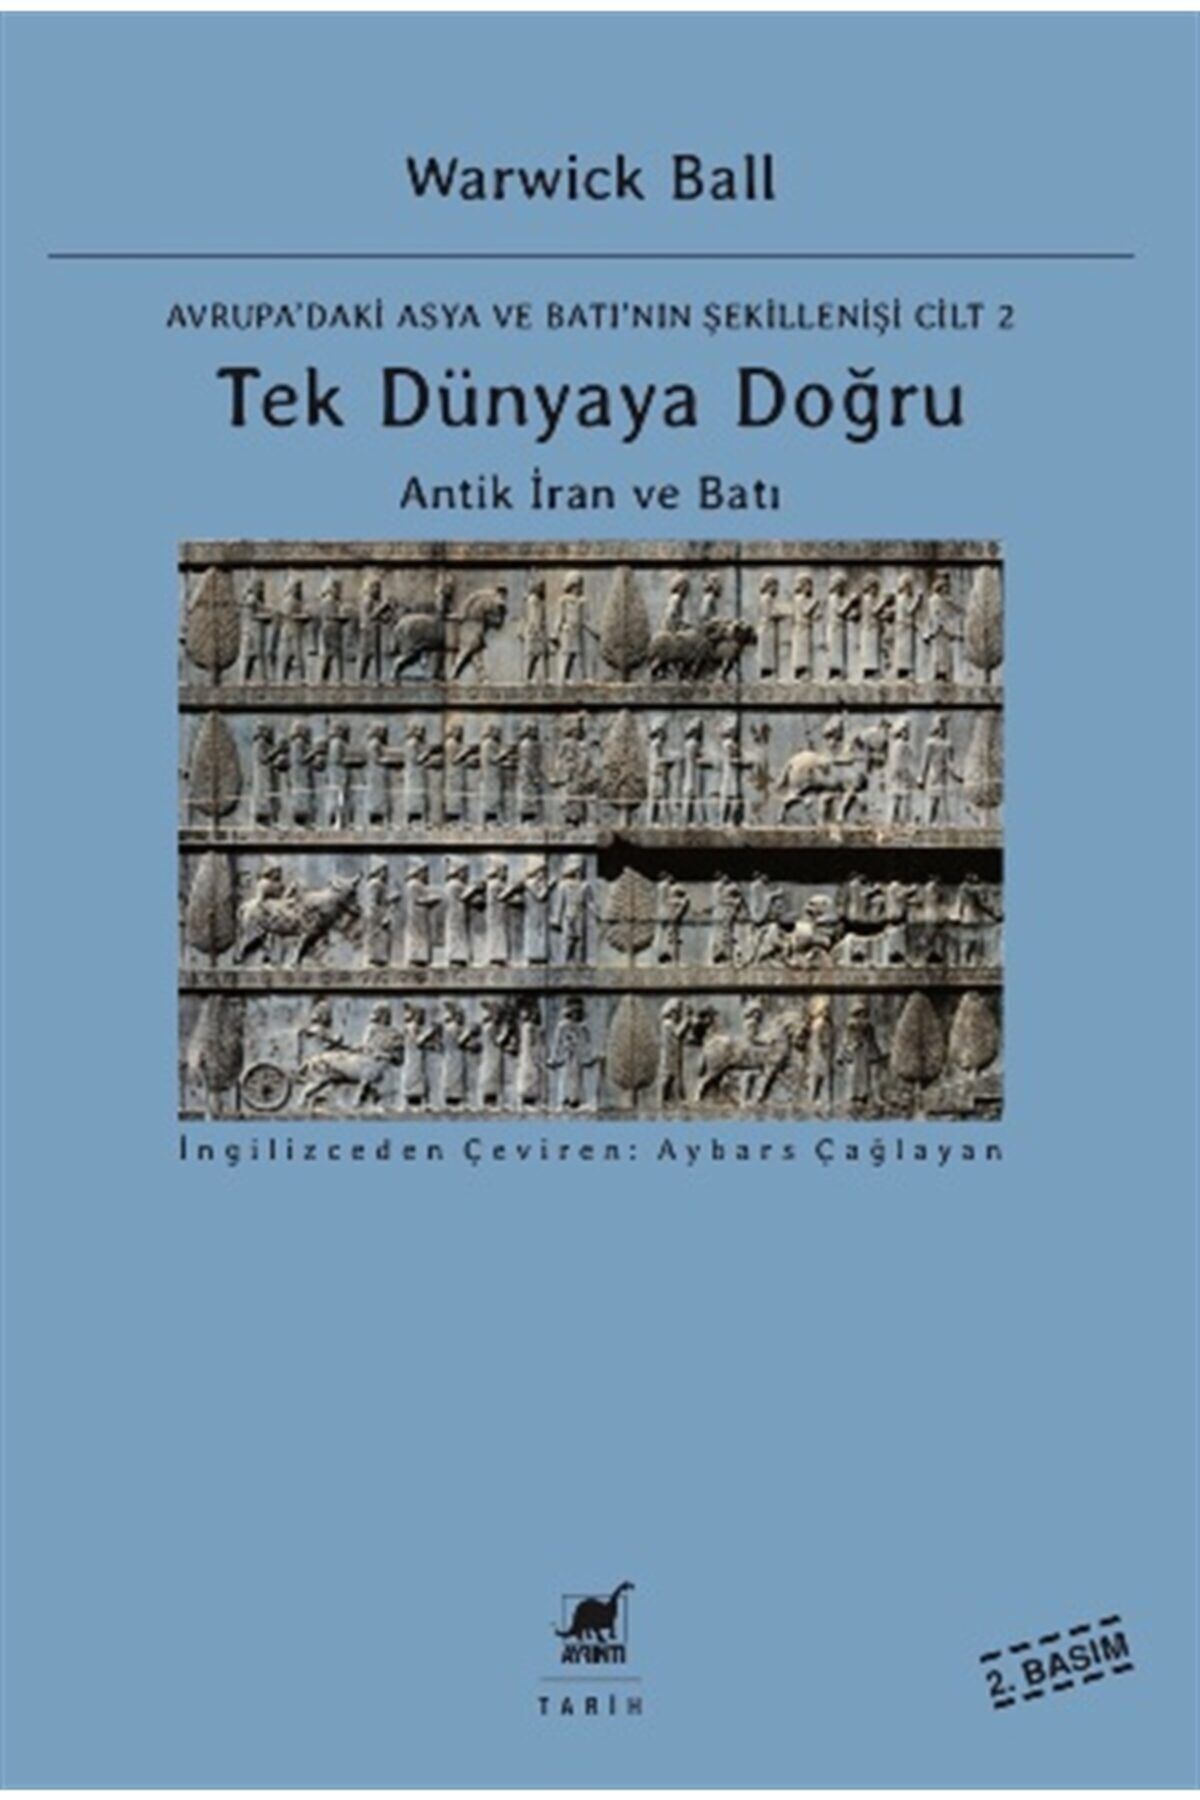 Ayrıntı Yayınları Tek Dünyaya Doğru - Antik Iran Ve Batı - Avrupa'daki Asya Ve Batı'nın Şekillenişi Cilt 2